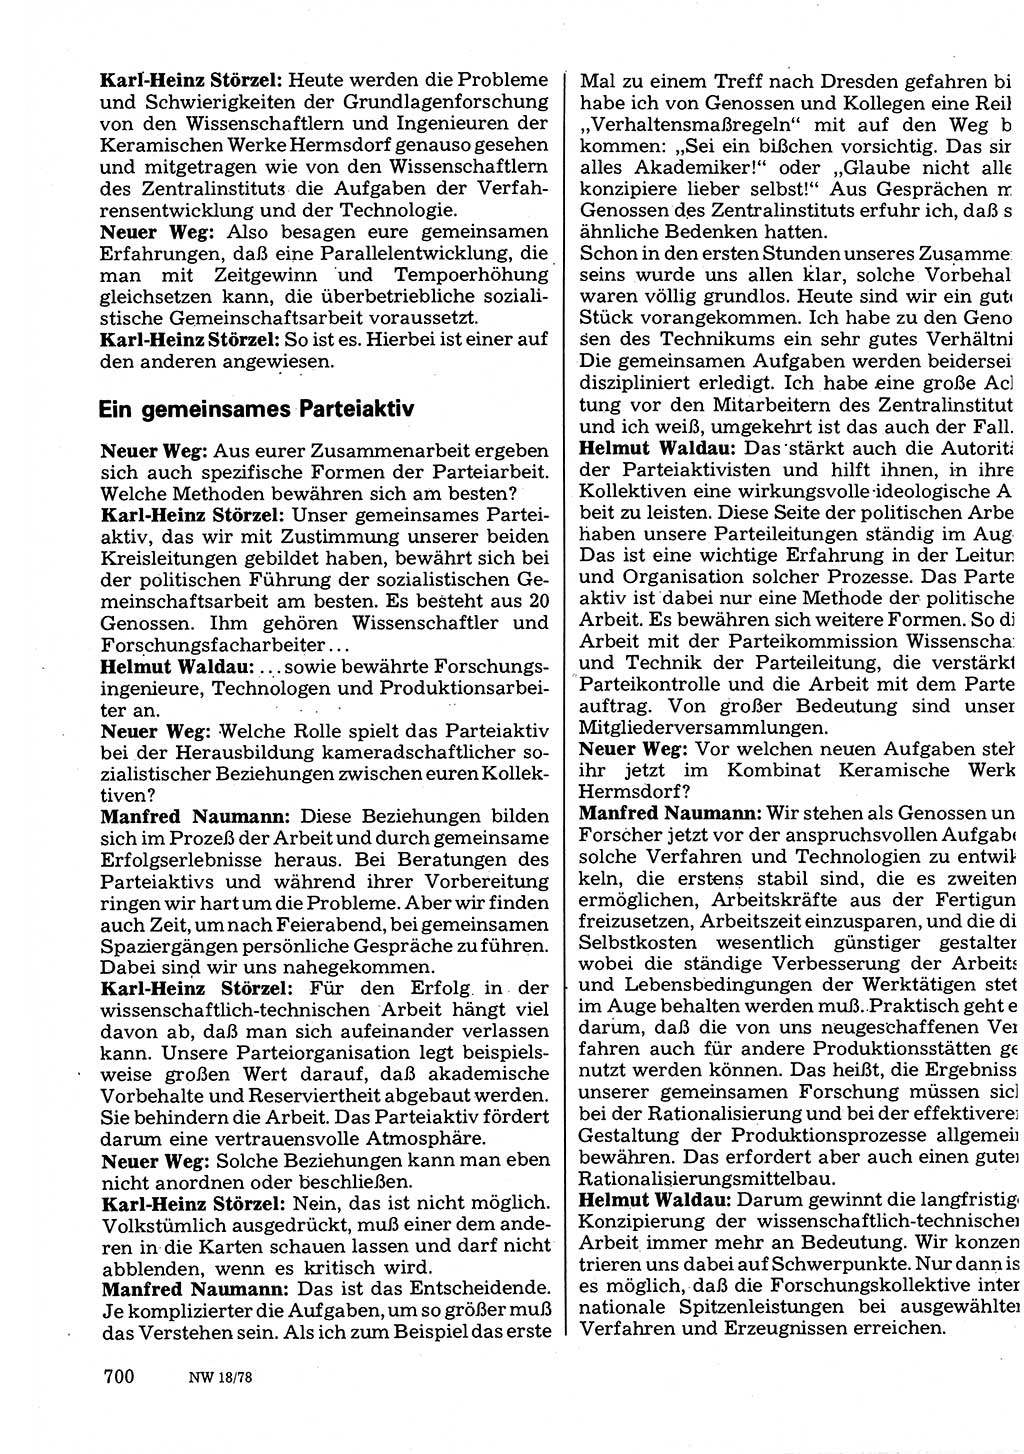 Neuer Weg (NW), Organ des Zentralkomitees (ZK) der SED (Sozialistische Einheitspartei Deutschlands) für Fragen des Parteilebens, 33. Jahrgang [Deutsche Demokratische Republik (DDR)] 1978, Seite 700 (NW ZK SED DDR 1978, S. 700)